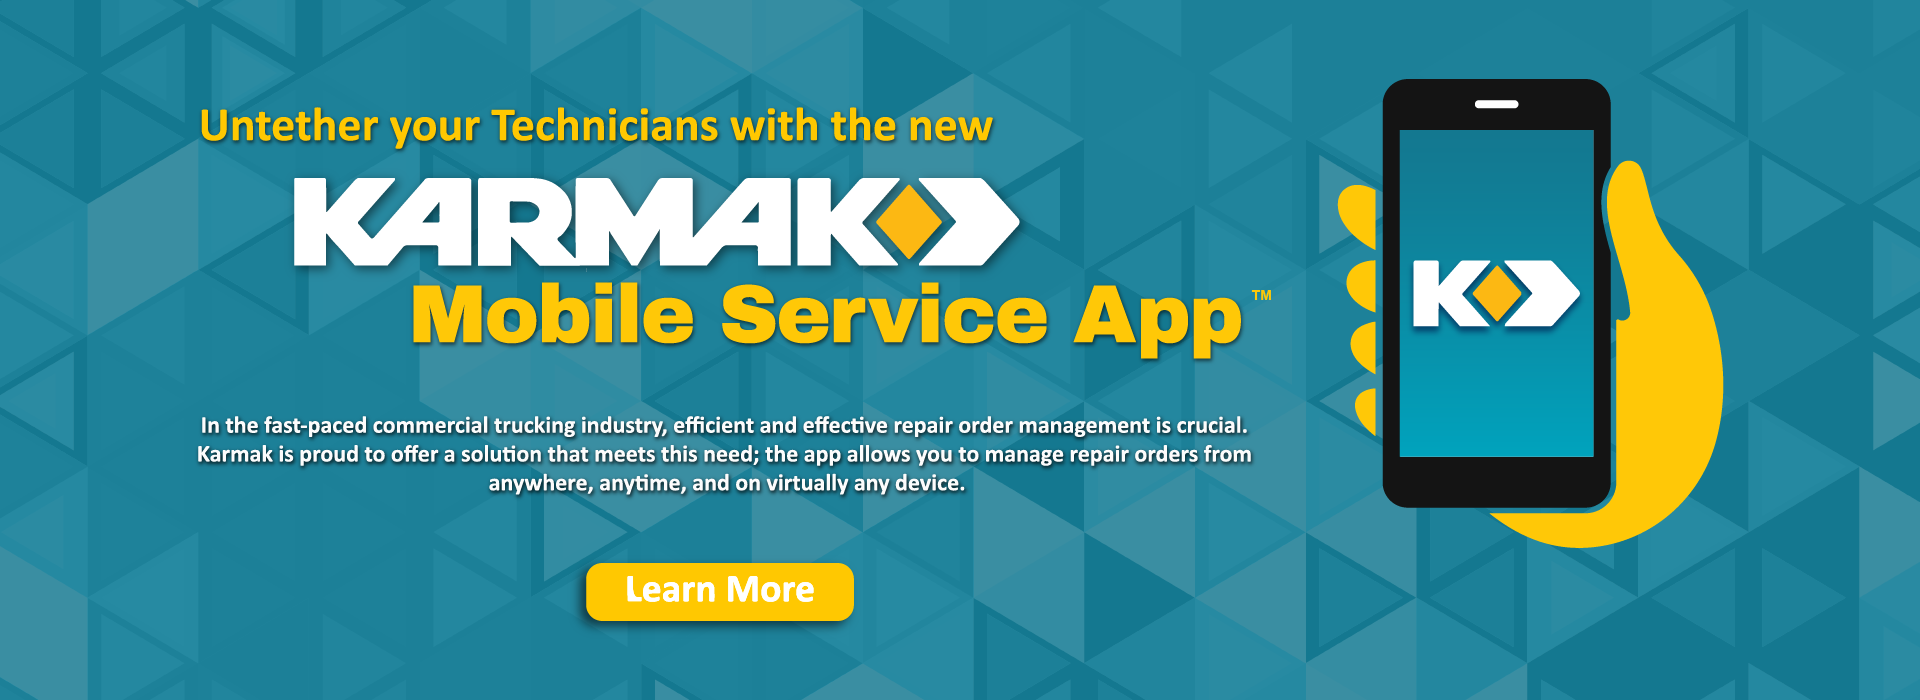 Karmak Mobile Service Banner